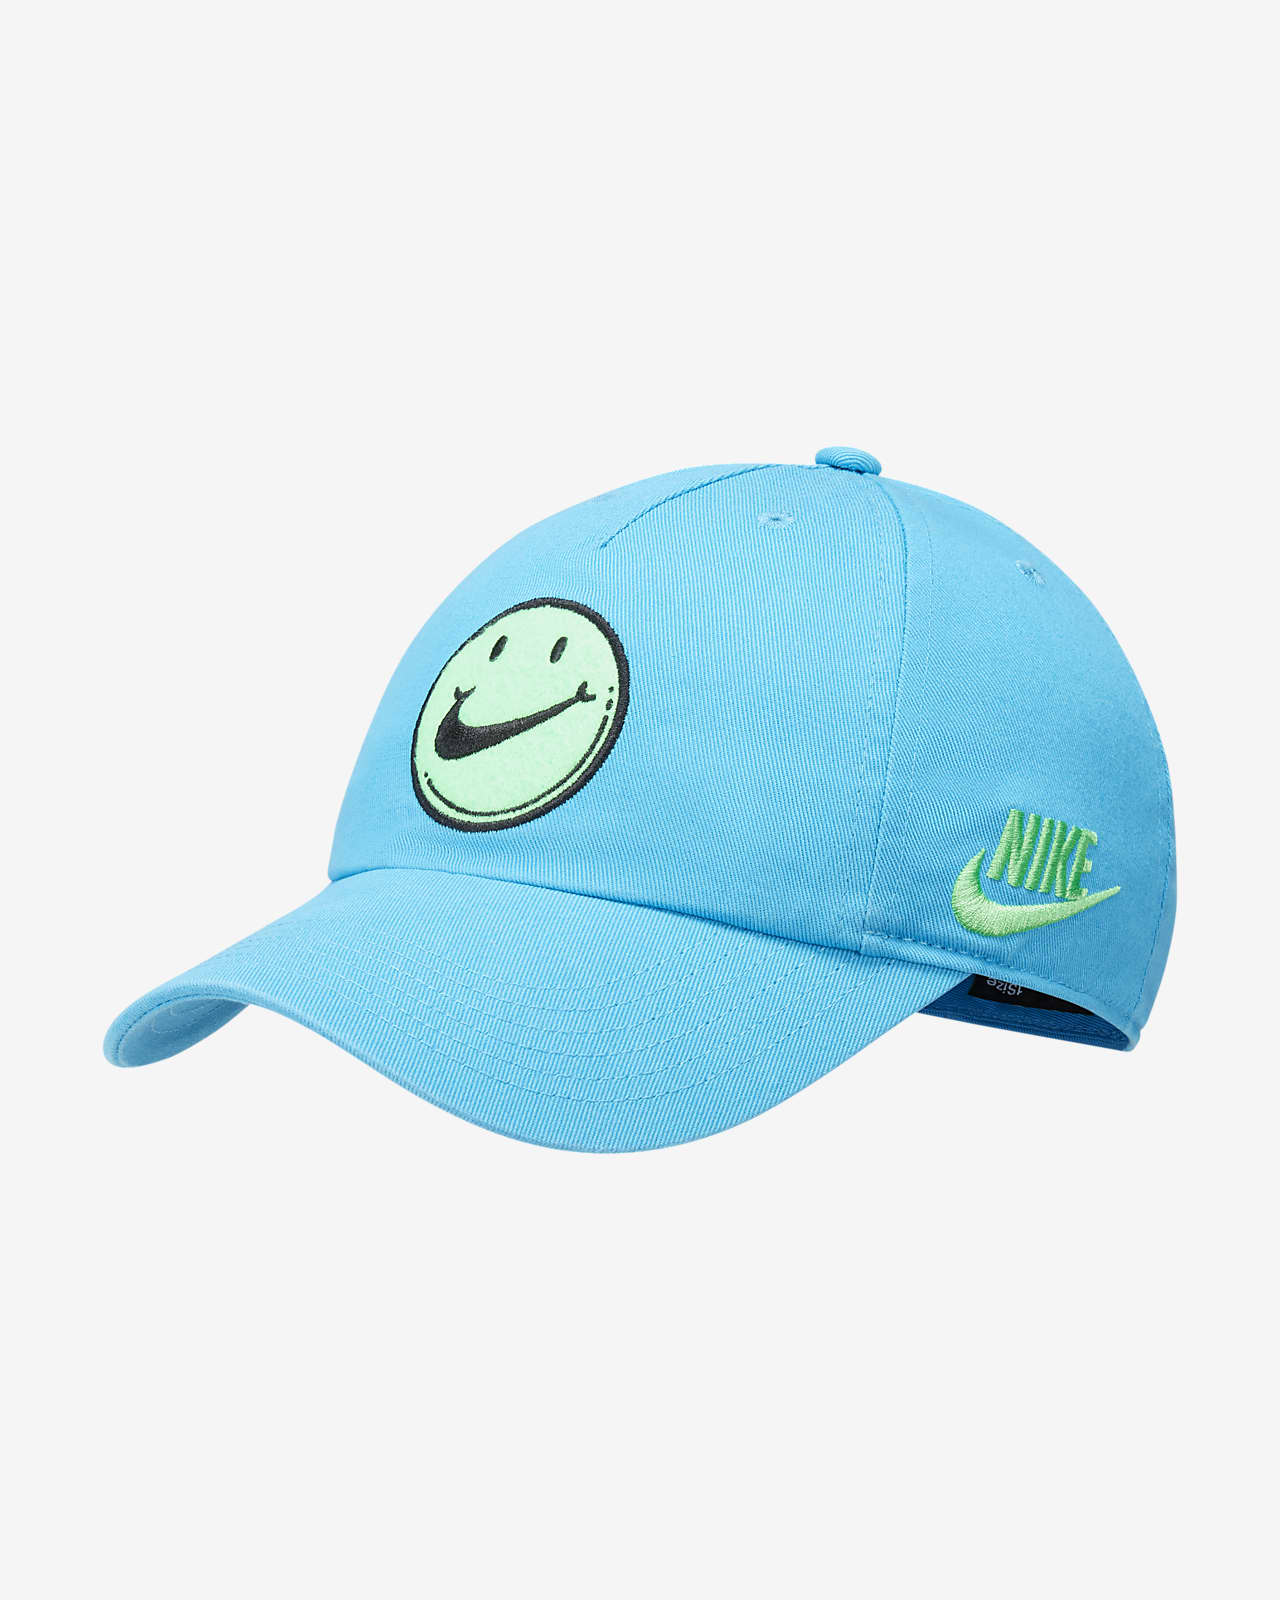 Nike Heritage86 Kids' Adjustable Hat.